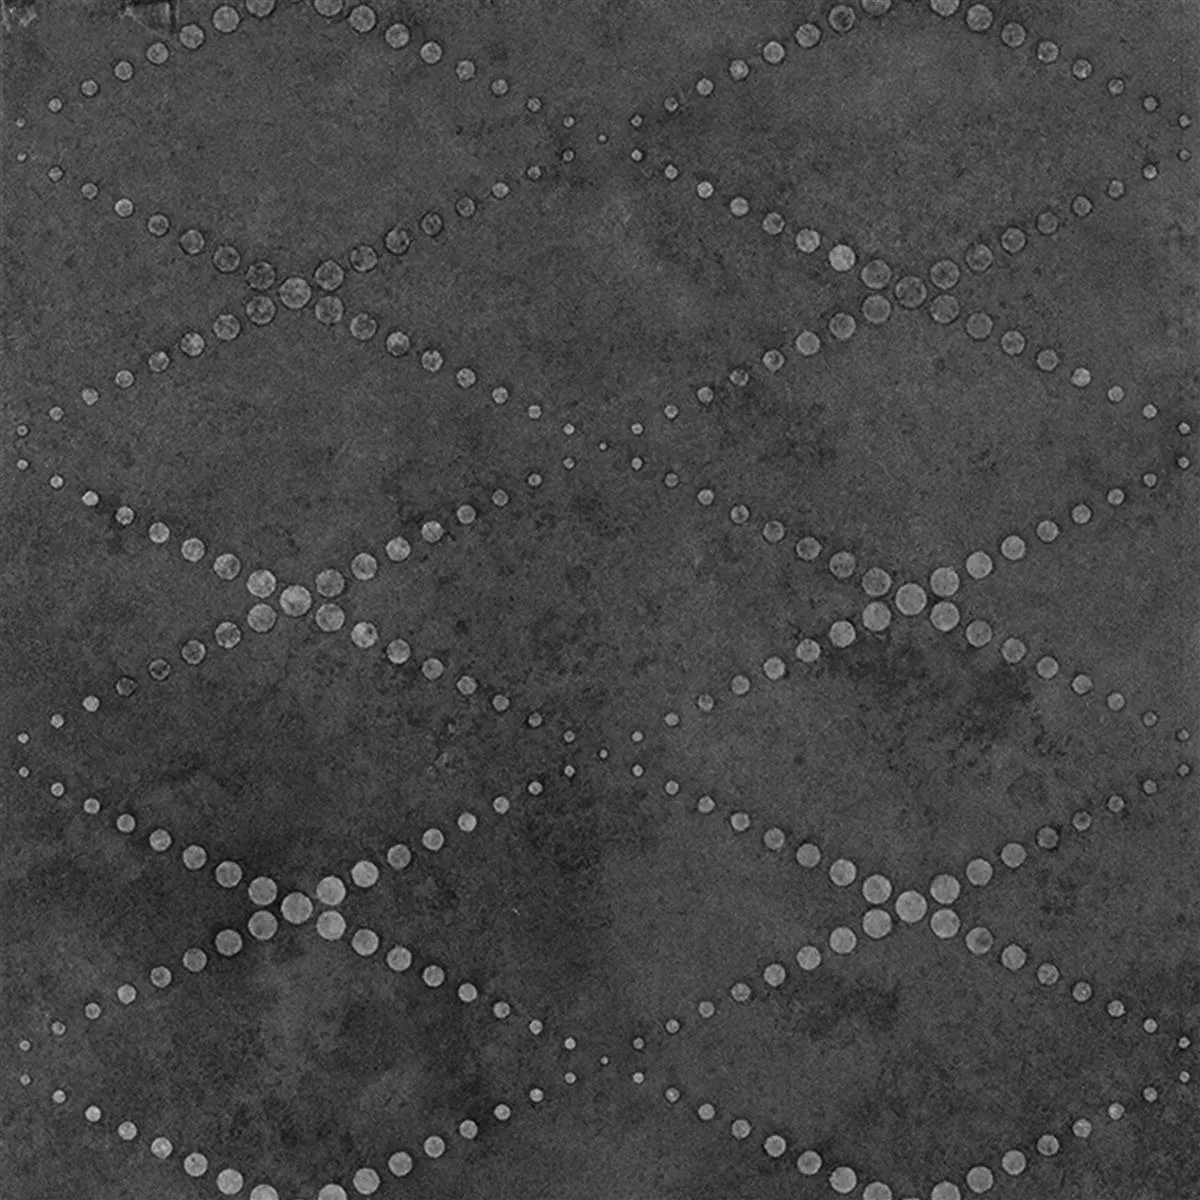 Vzorek Podlahové Dlaždice Chicago Kovový Vzhled Antracitová R9 - 18,5x18,5cm Pattern 2